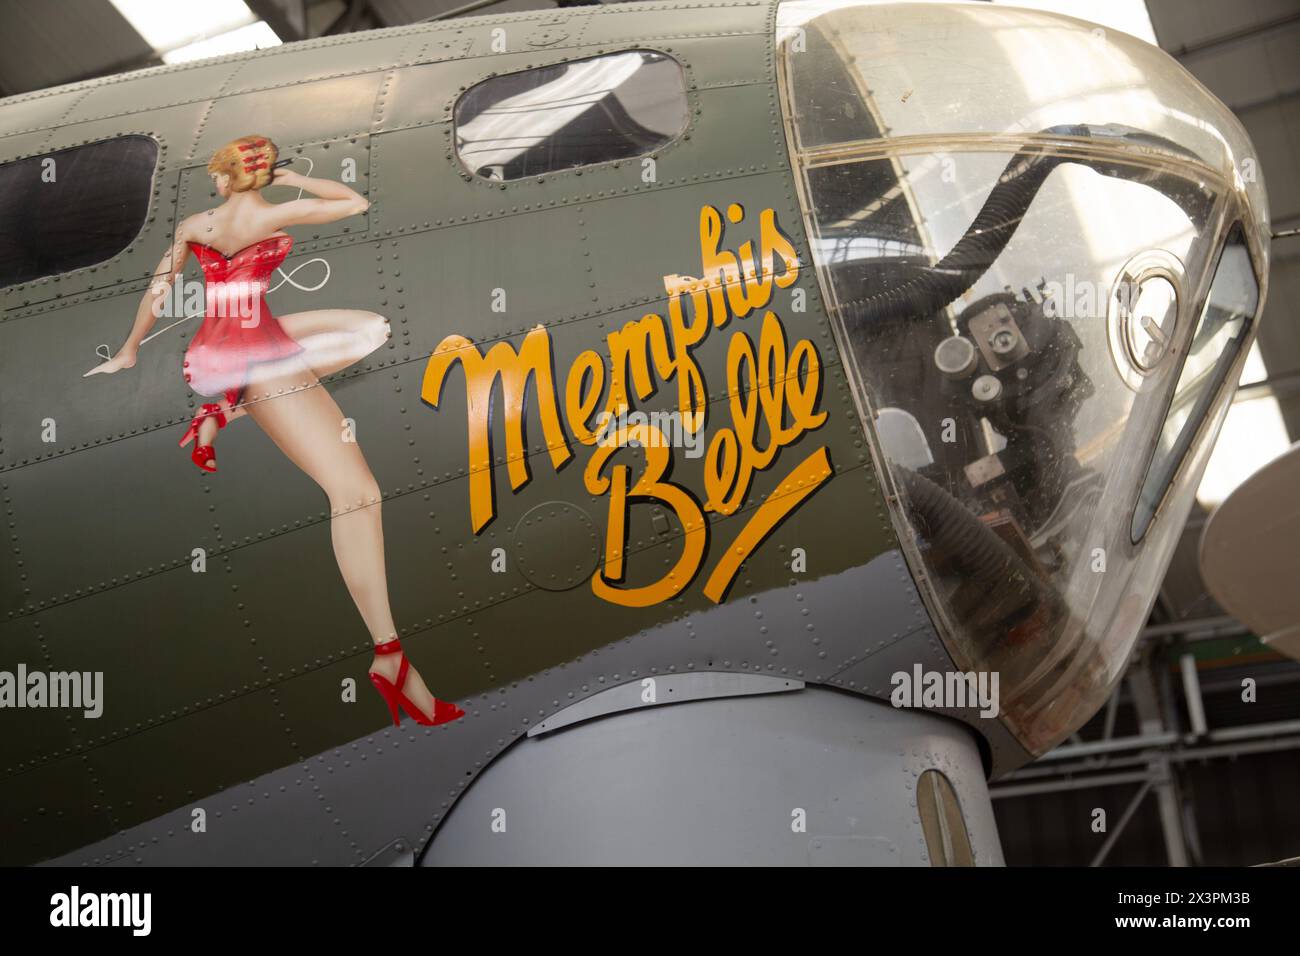 Memphis Bell Nose art du Boeing B-17 Flying Fortress, bombardier lourd quadrimoteur américain de la seconde Guerre mondiale. IWM, Duxford, Royaume-Uni Banque D'Images